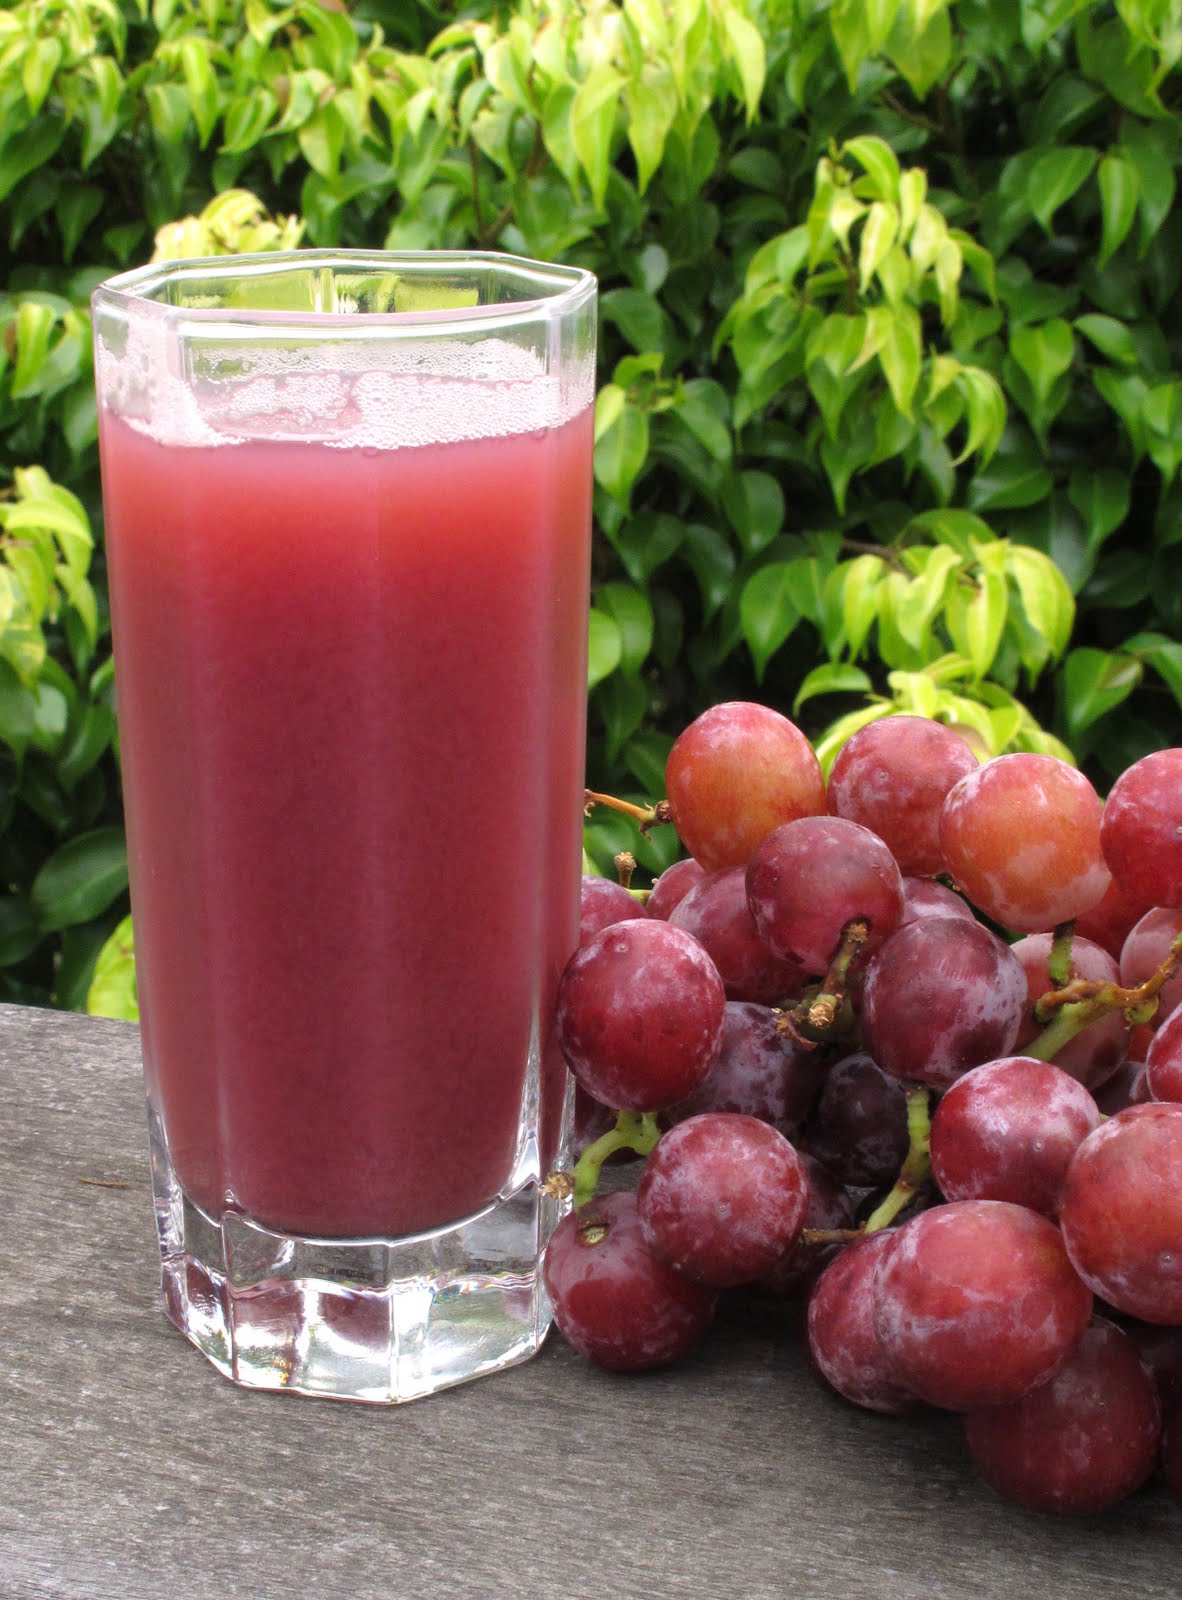 In Erika's Kitchen: Fresh grape juice recipe